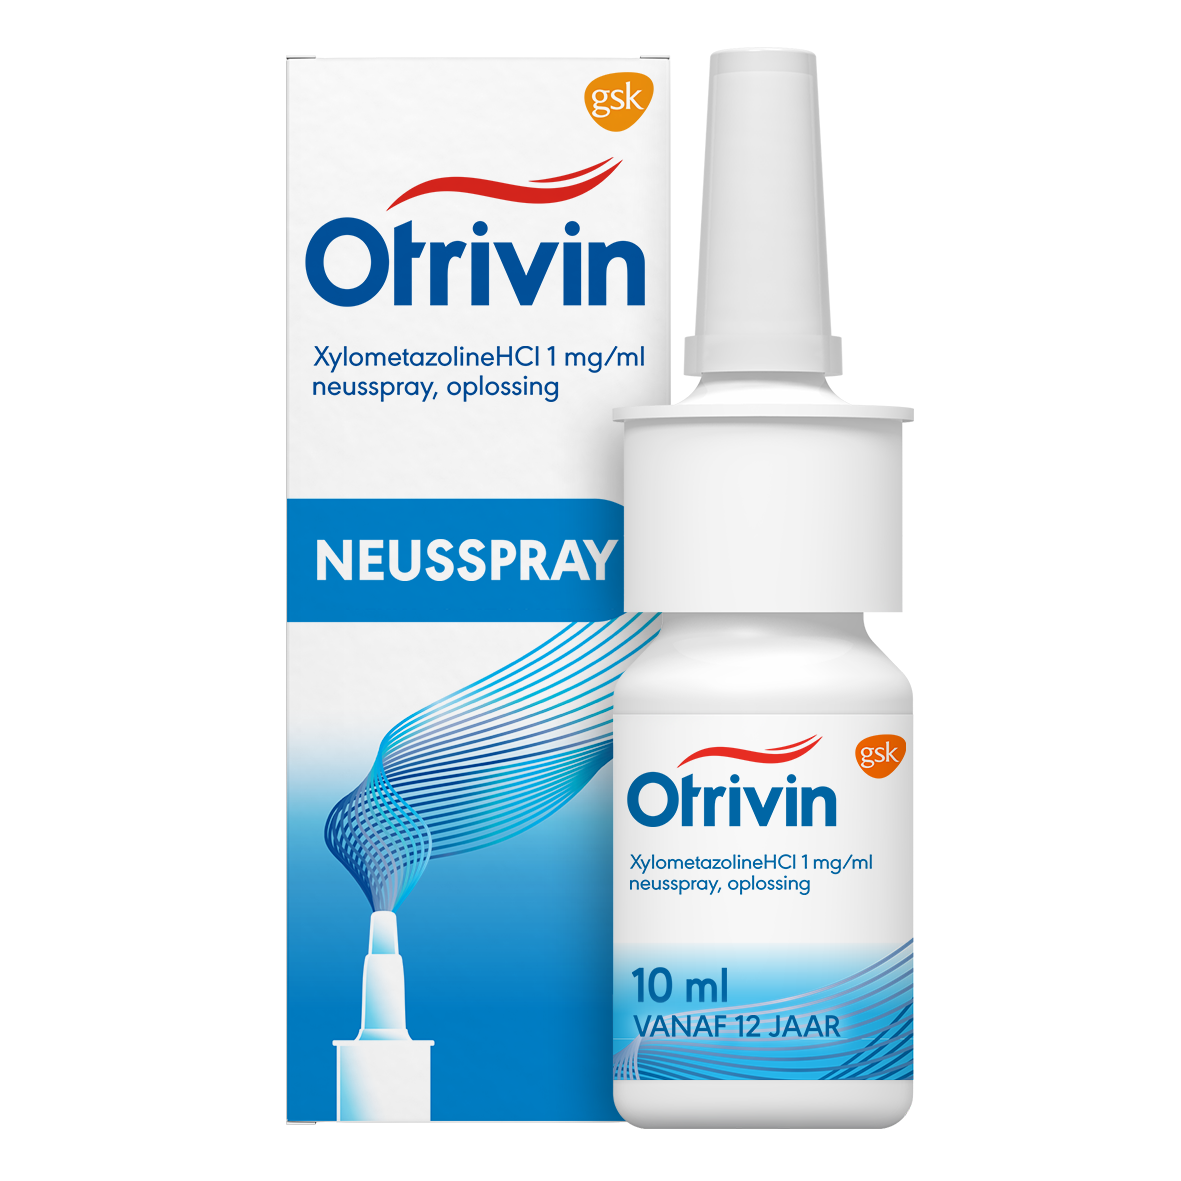 Image of Otrivin Xylometazoline HCI 1 mg/ml Neusspray bij een verstopte neus